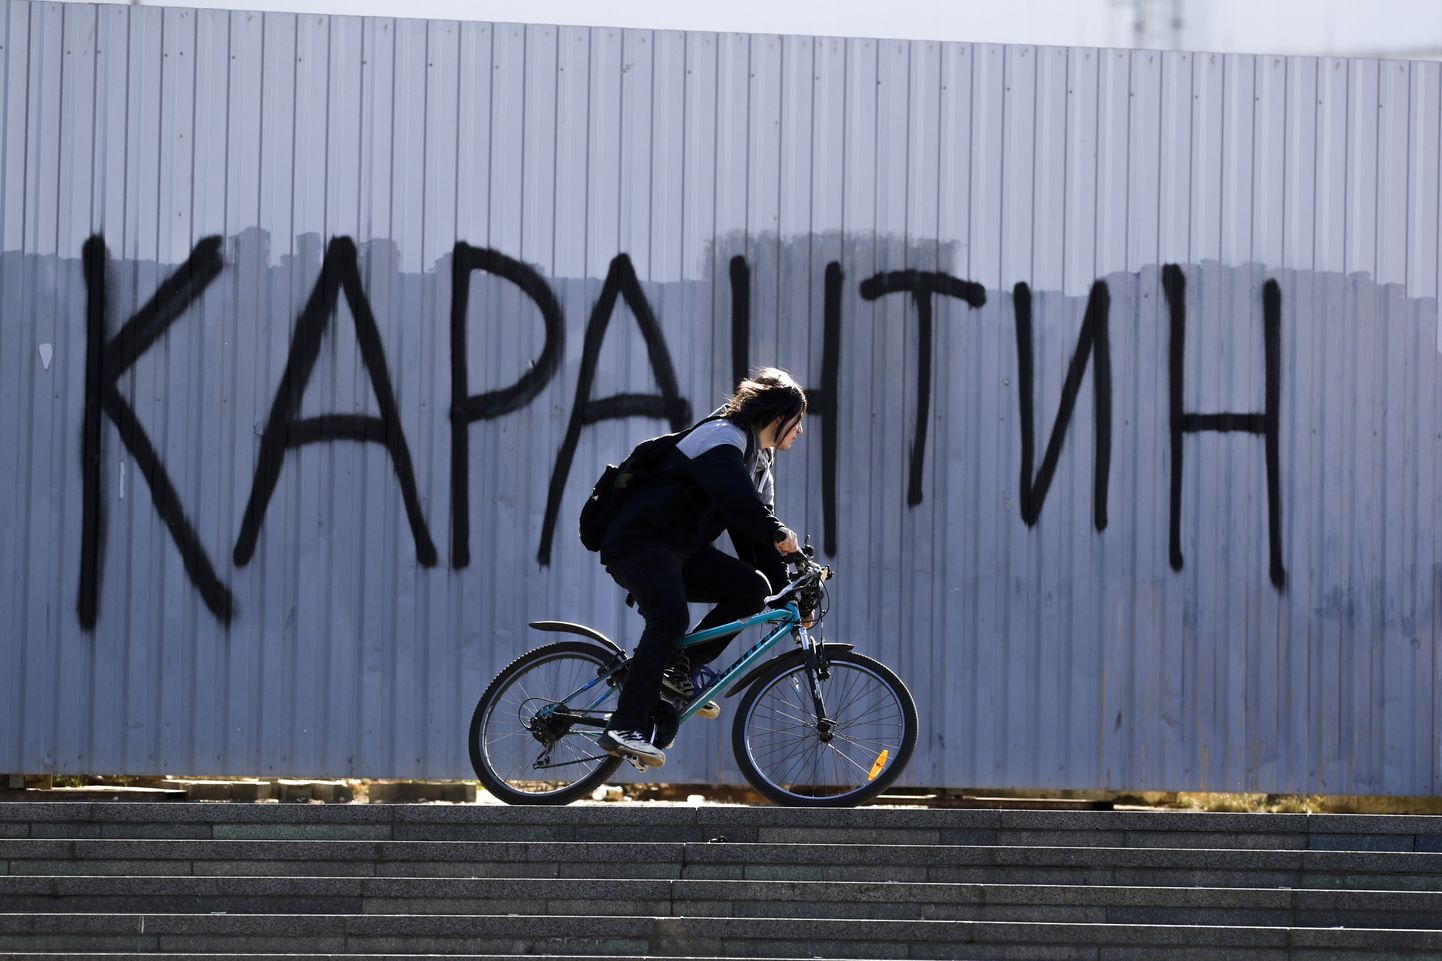 Naine sõidab jalgrattaga Minskis 6. aprill 2020.